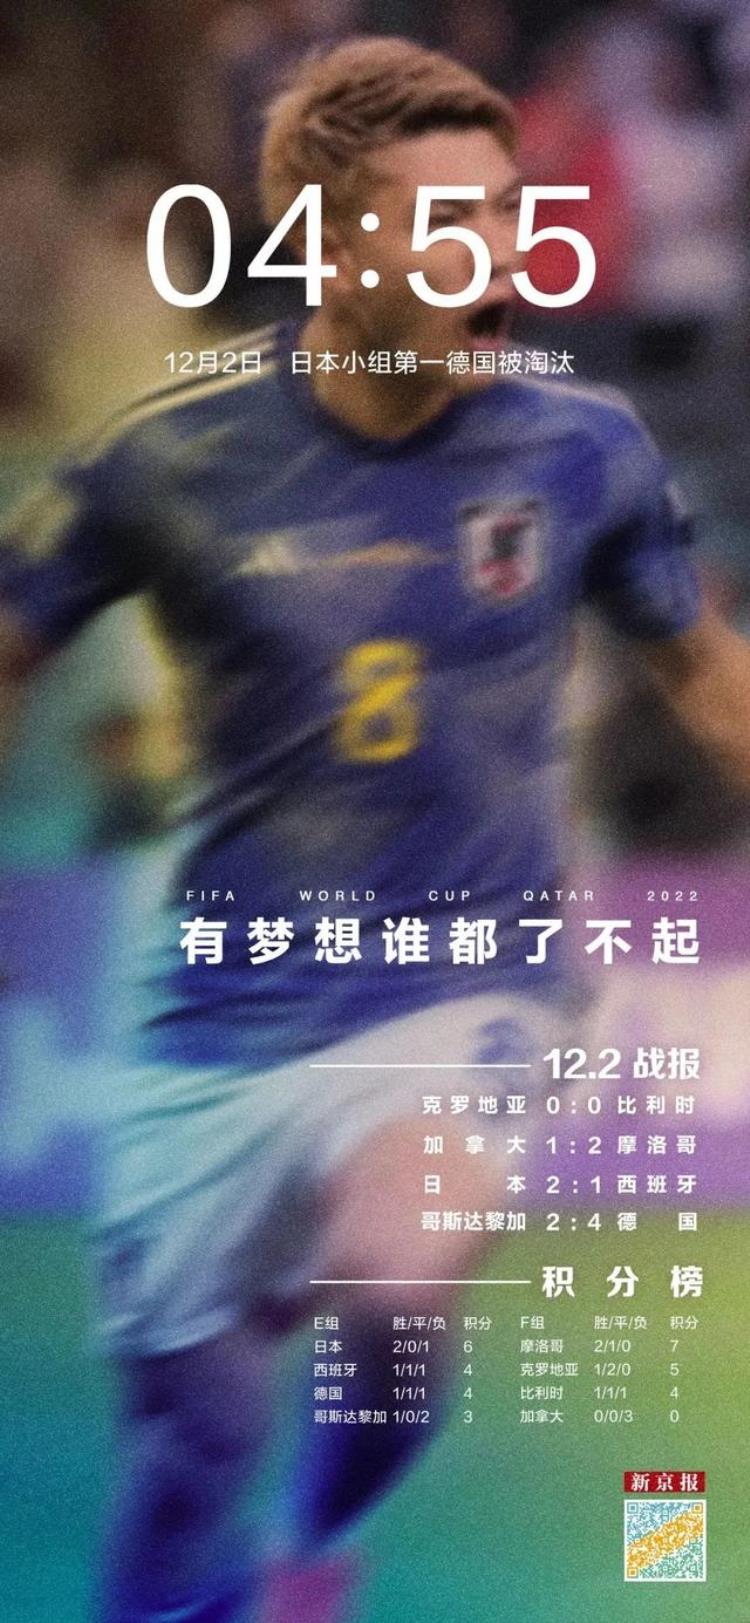 2022年卡塔尔世界杯海报「27个进球时刻定格2022卡塔尔世界杯新京报世界杯海报集」